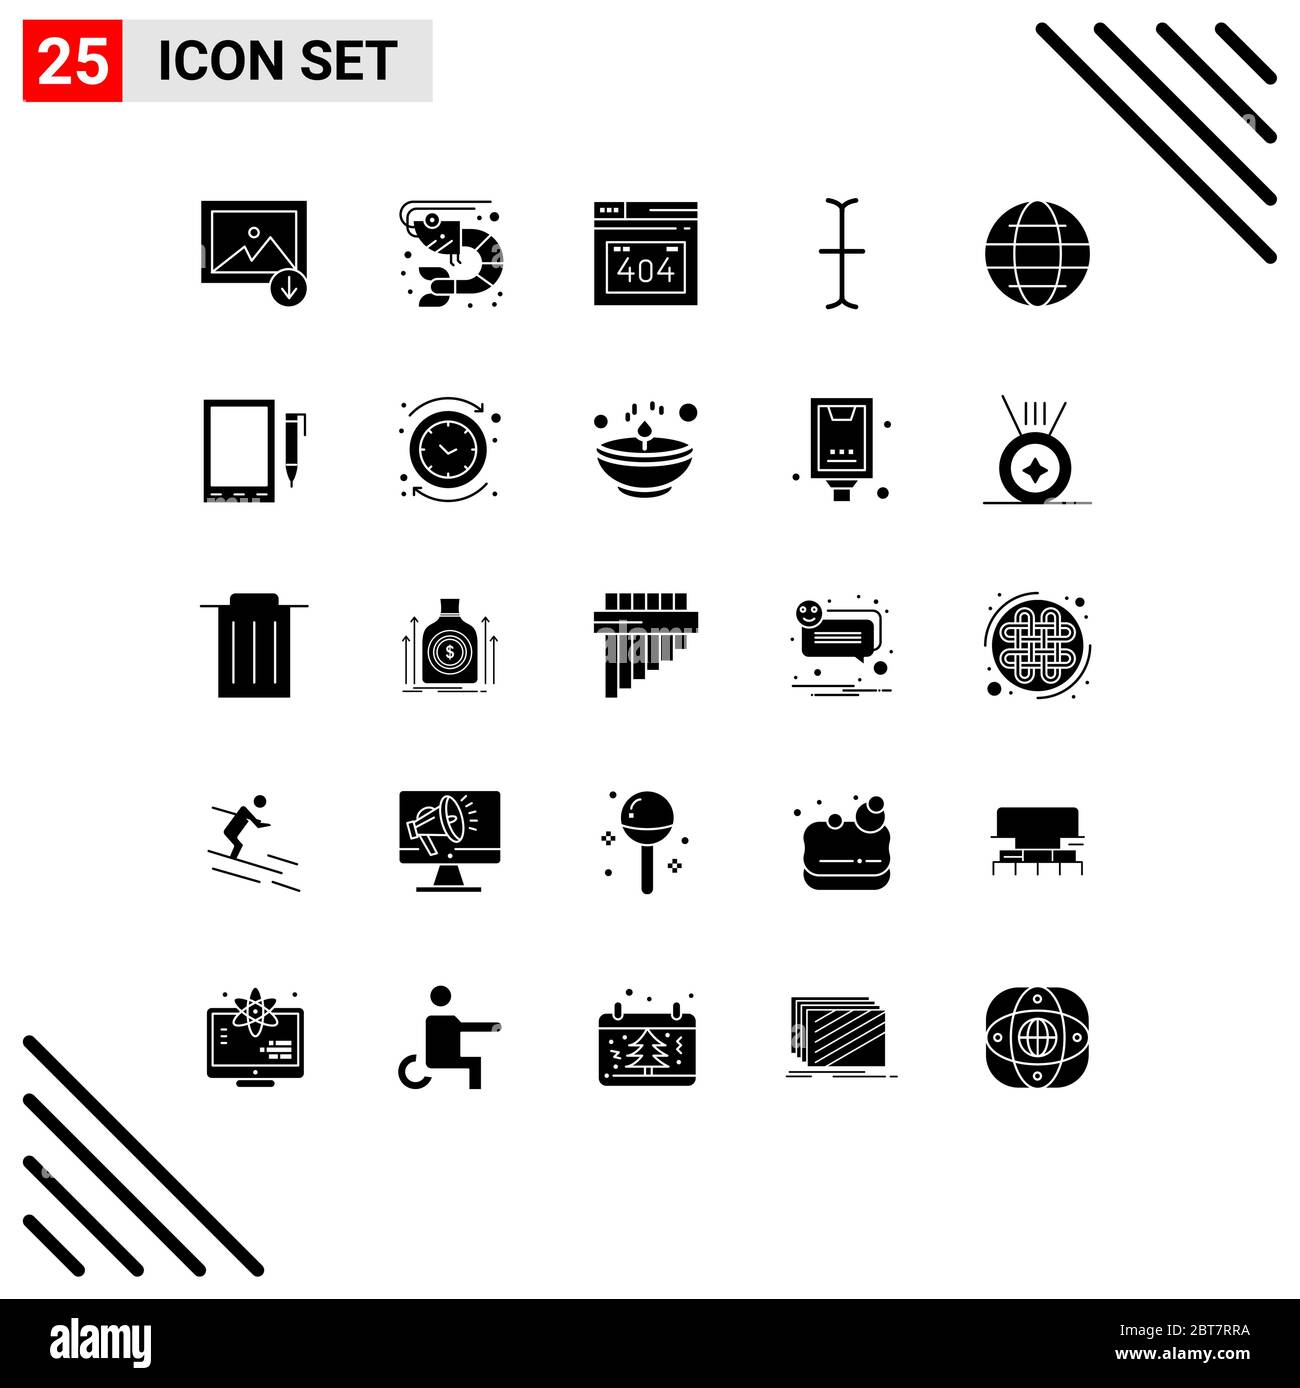 25 icone creative segni e simboli moderni di cella, mondo, pagina di errore, sicurezza, globo elementi di disegno vettoriale editabili Illustrazione Vettoriale